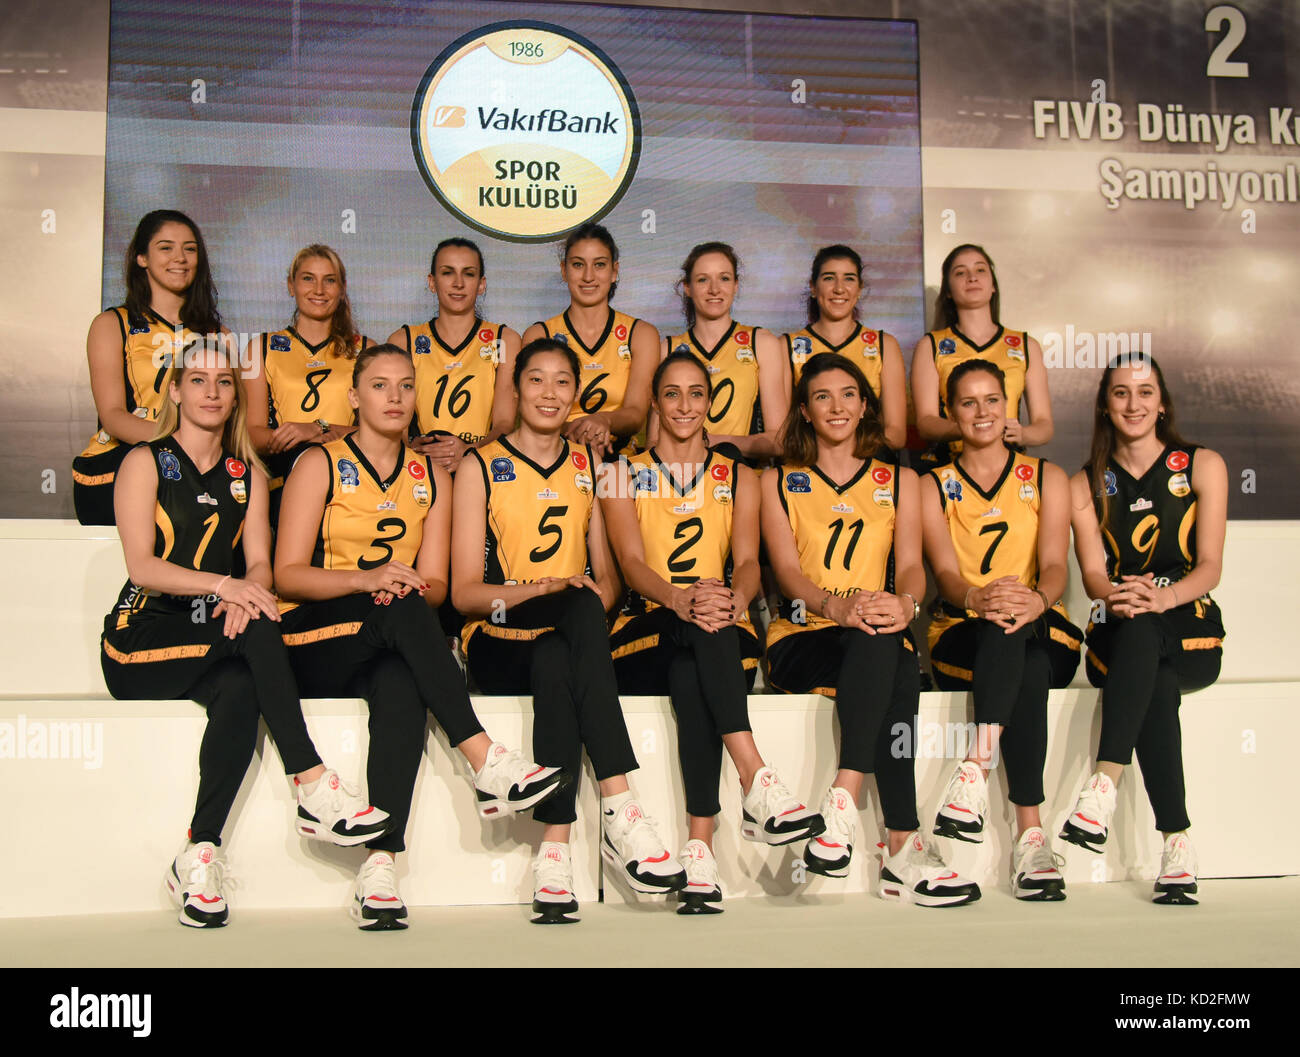 171009) -- Estambul, oct. 9, 2017 (Xinhua) -- los jugadores del turco  vakifbank selección de voleibol femenino posar para una foto de grupo  durante una conferencia de prensa celebrada en Estambul, Turquía,